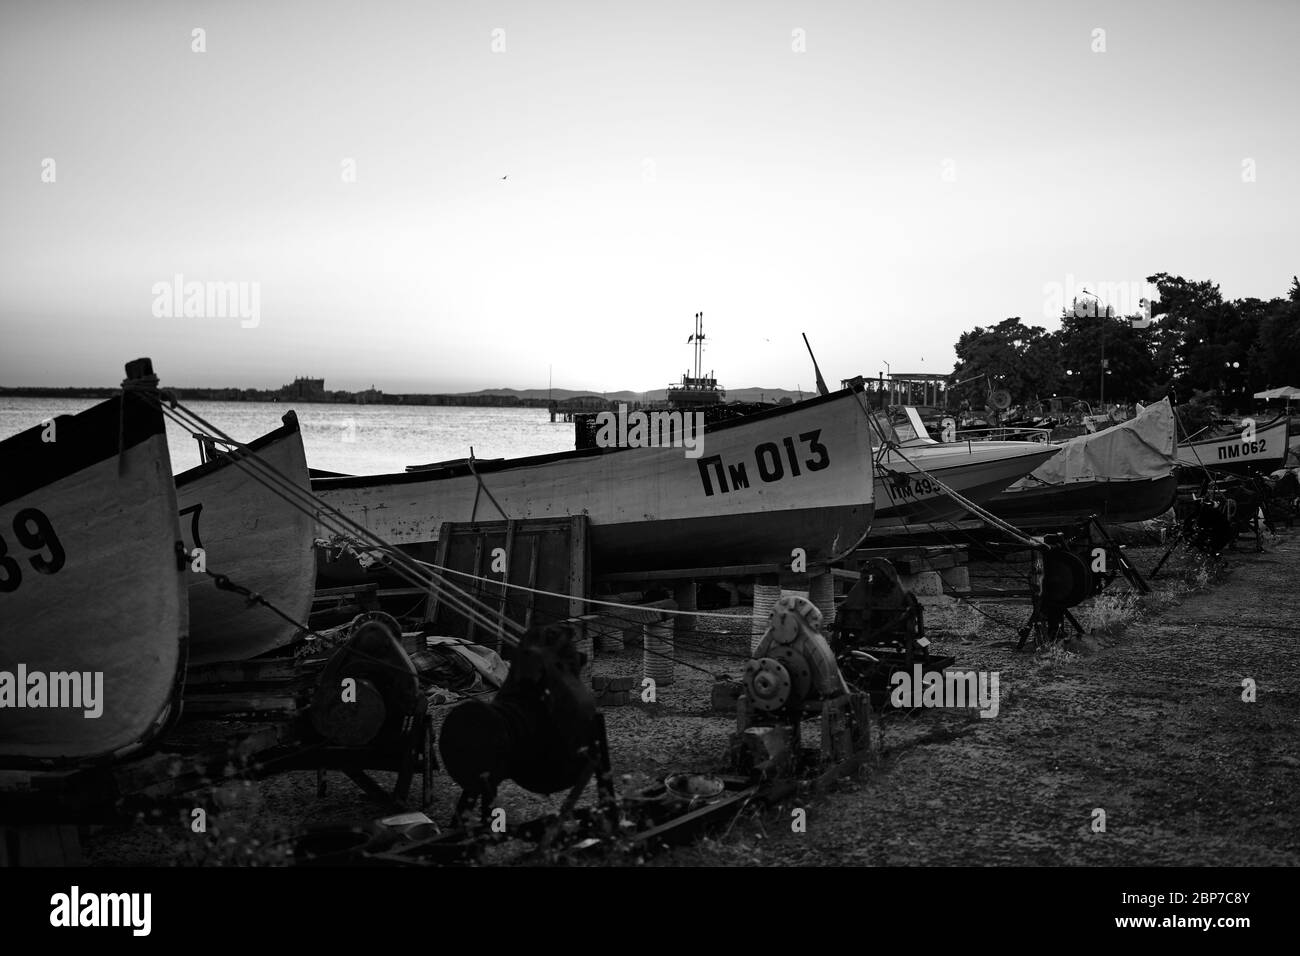 POMORIE, Bulgarien - 30. Juni 2019: Boote der Fischer stehen am Ufer des Seehafen des Badeortes Stadt Pomorie. Schwarz und Weiß. Stockfoto